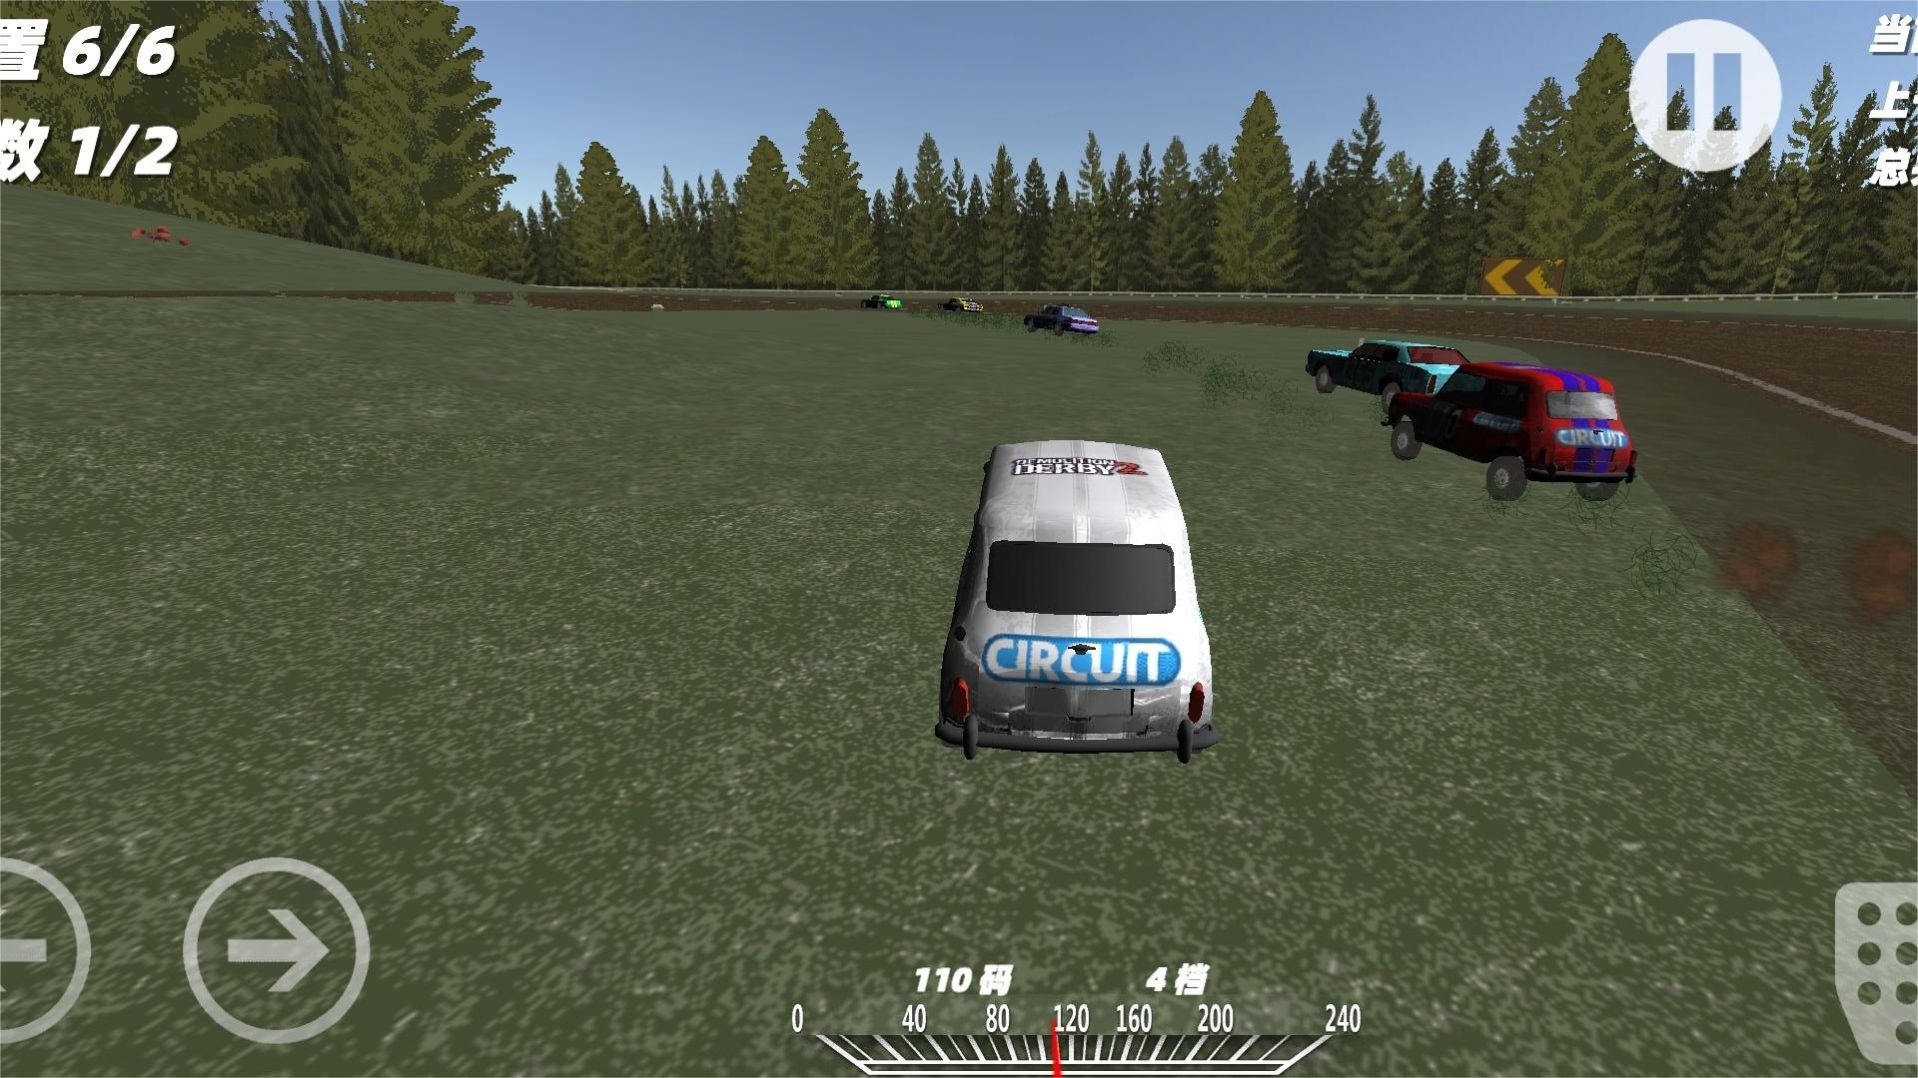 模拟真实车祸事故游戏安卓版下载 v1.0截图2